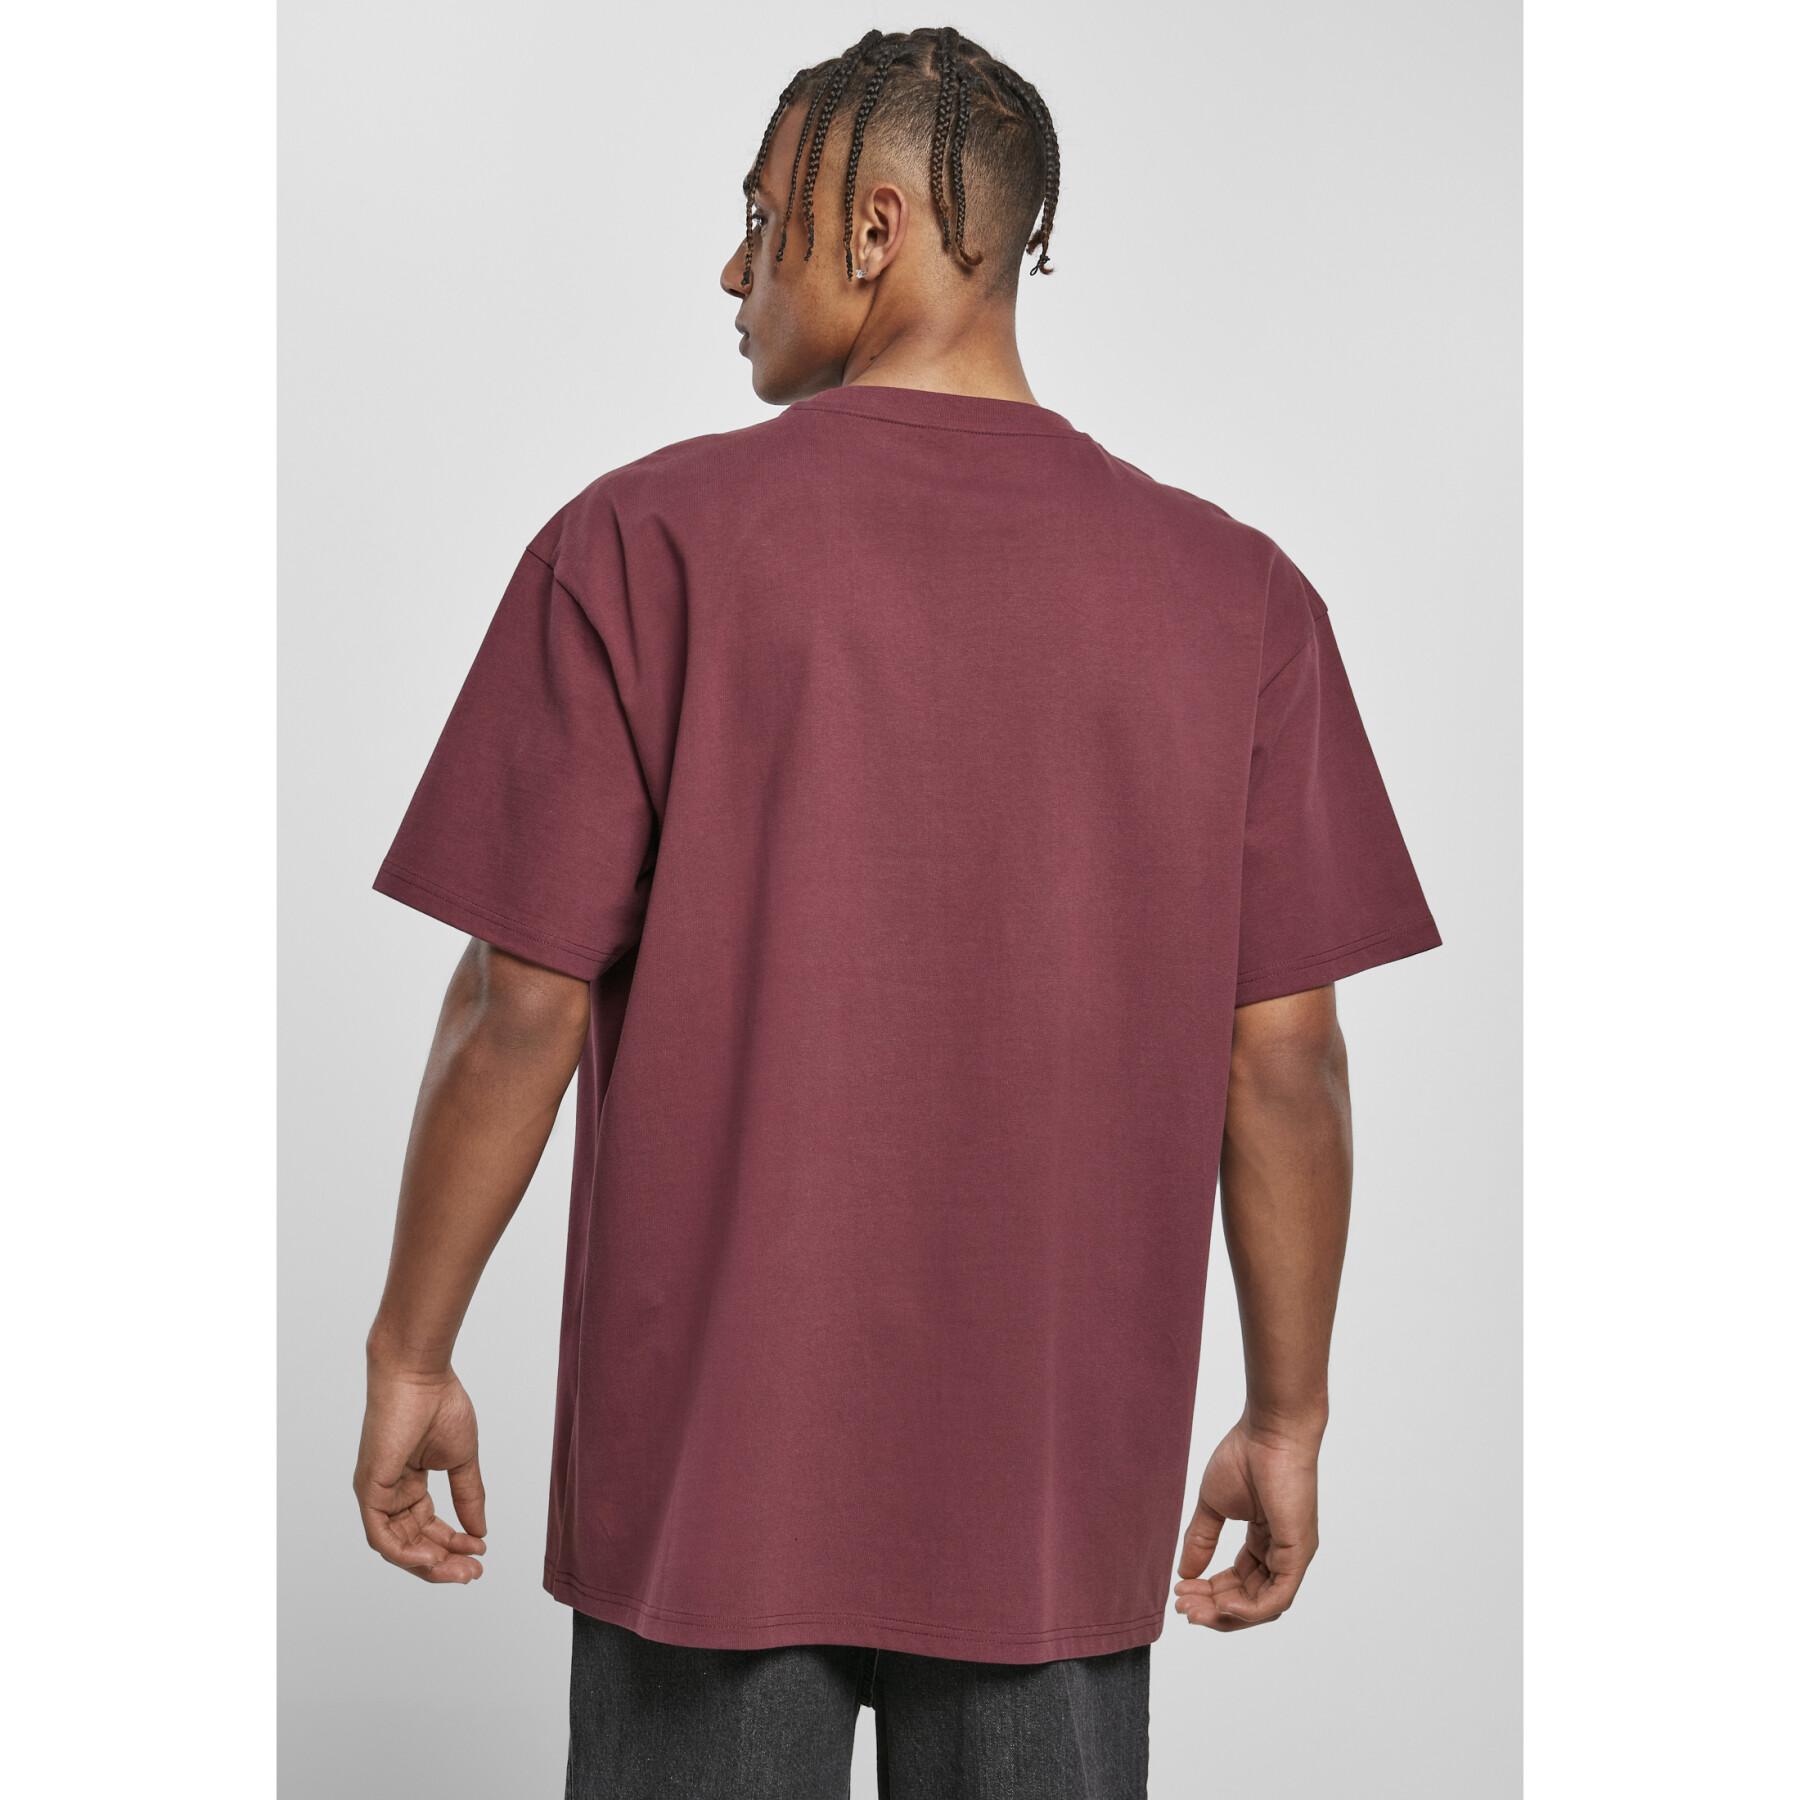 T-shirt Urban Classics heavy oversized- large sizes